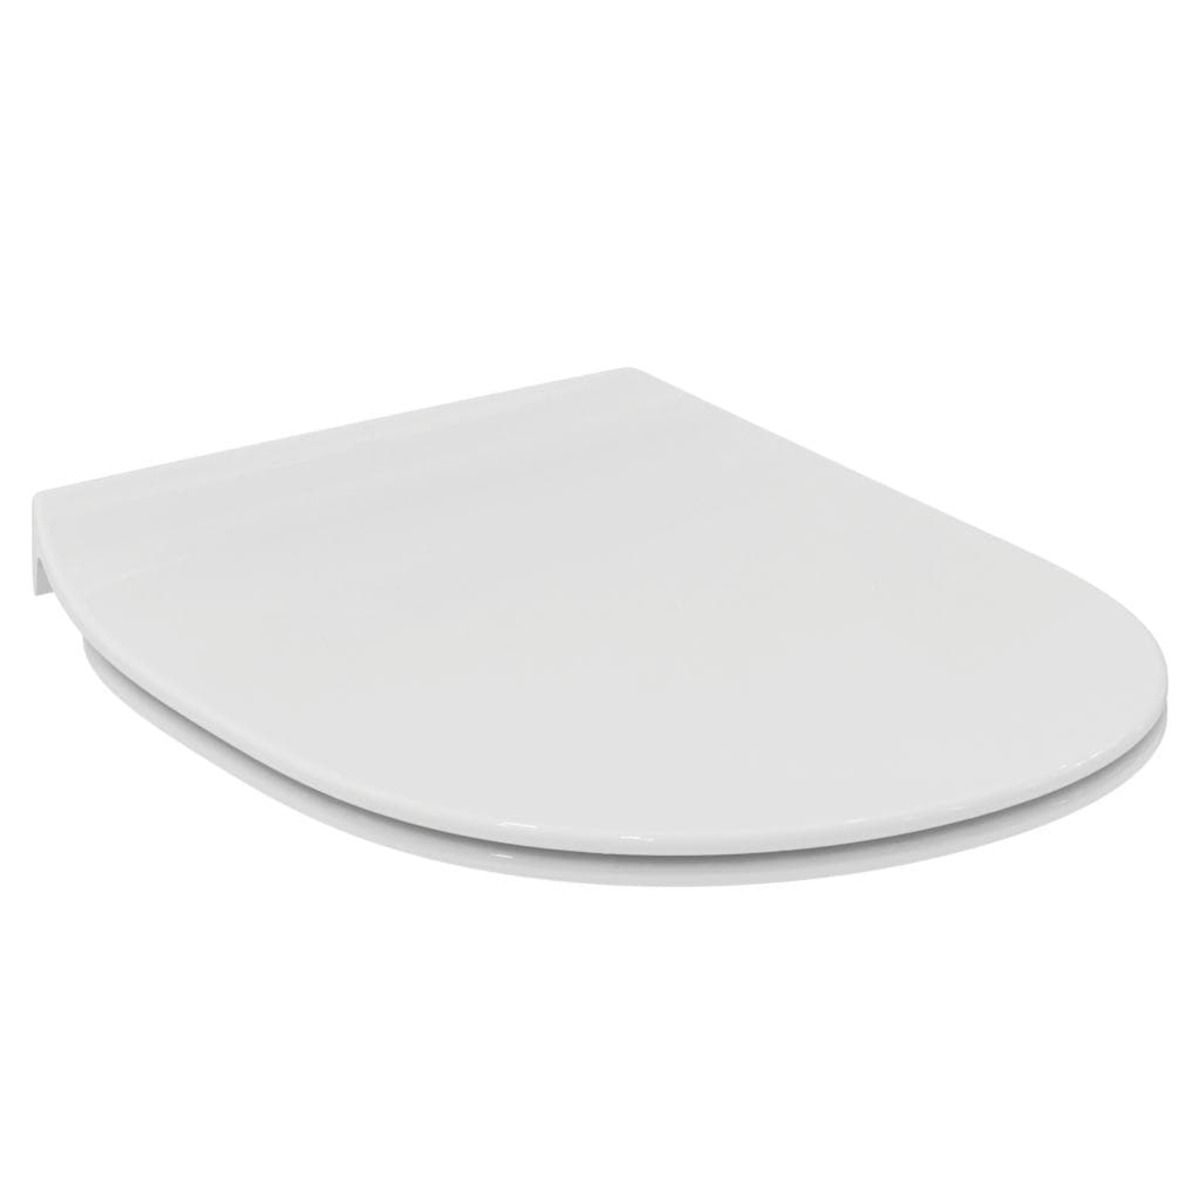 Wc prkénko Ideal Standard Connect thermoplast bílá E772301 - Siko - koupelny - kuchyně